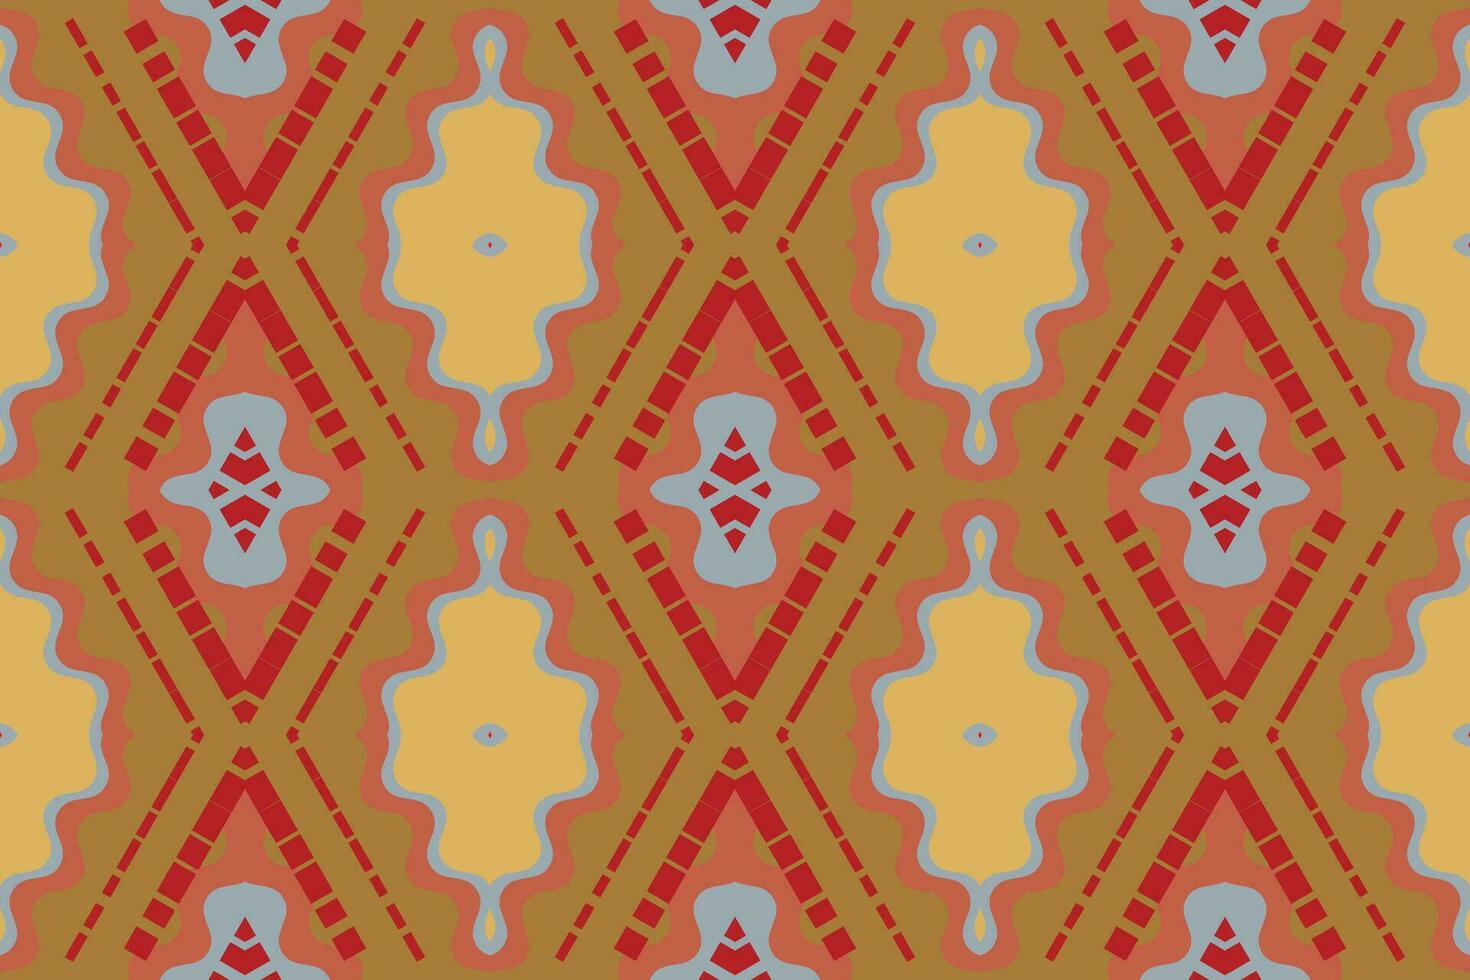 ikat bloemen paisley borduurwerk achtergrond. ikat patronen meetkundig etnisch oosters patroon traditioneel.azteken stijl abstract vector illustratie.ontwerp voor textuur, stof, kleding, verpakking, sarong.